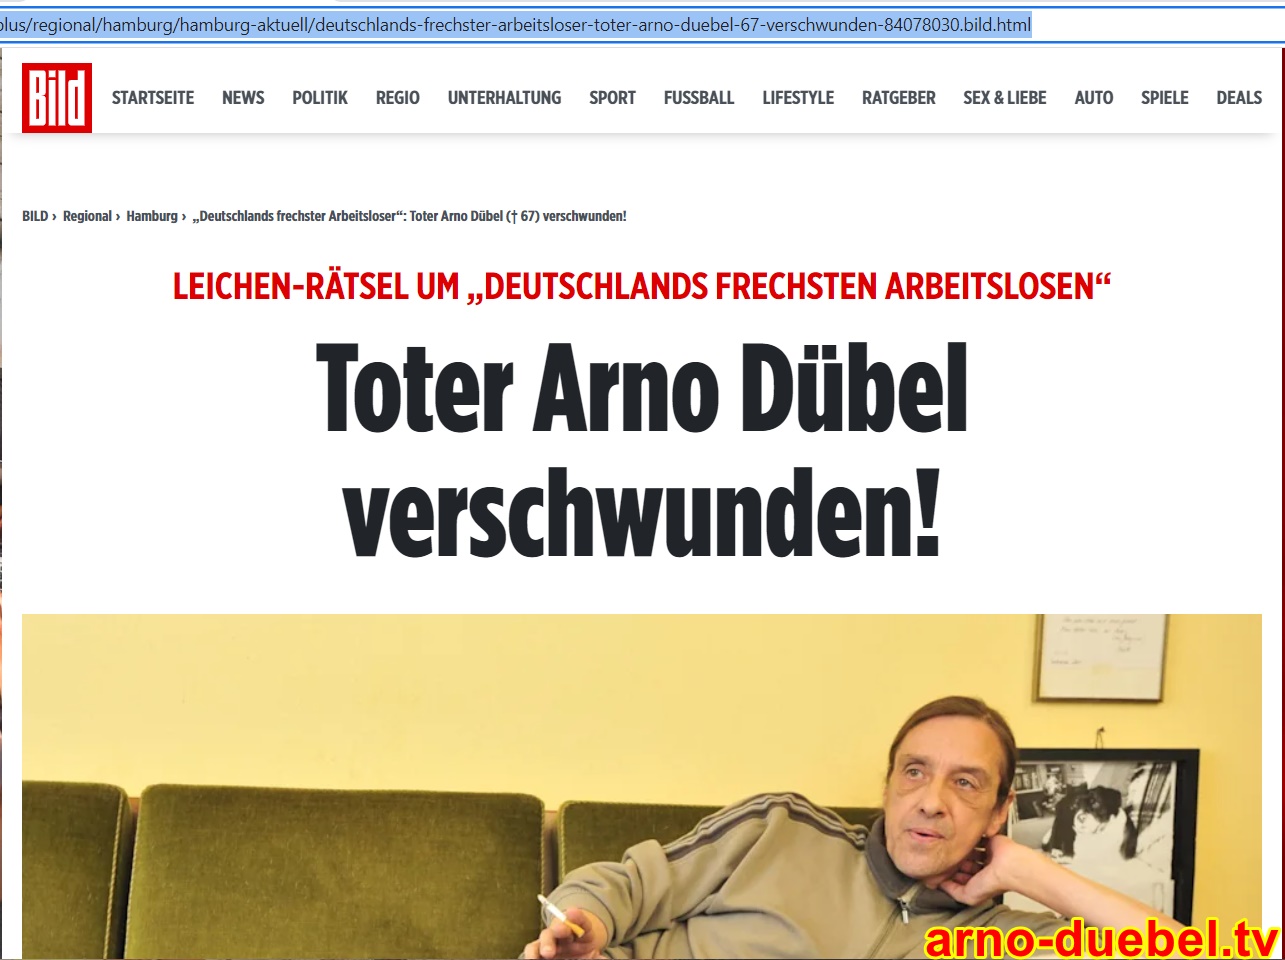 Toter Arno Dübel verschwunden! | Das Leichen-Rätsel in BILD